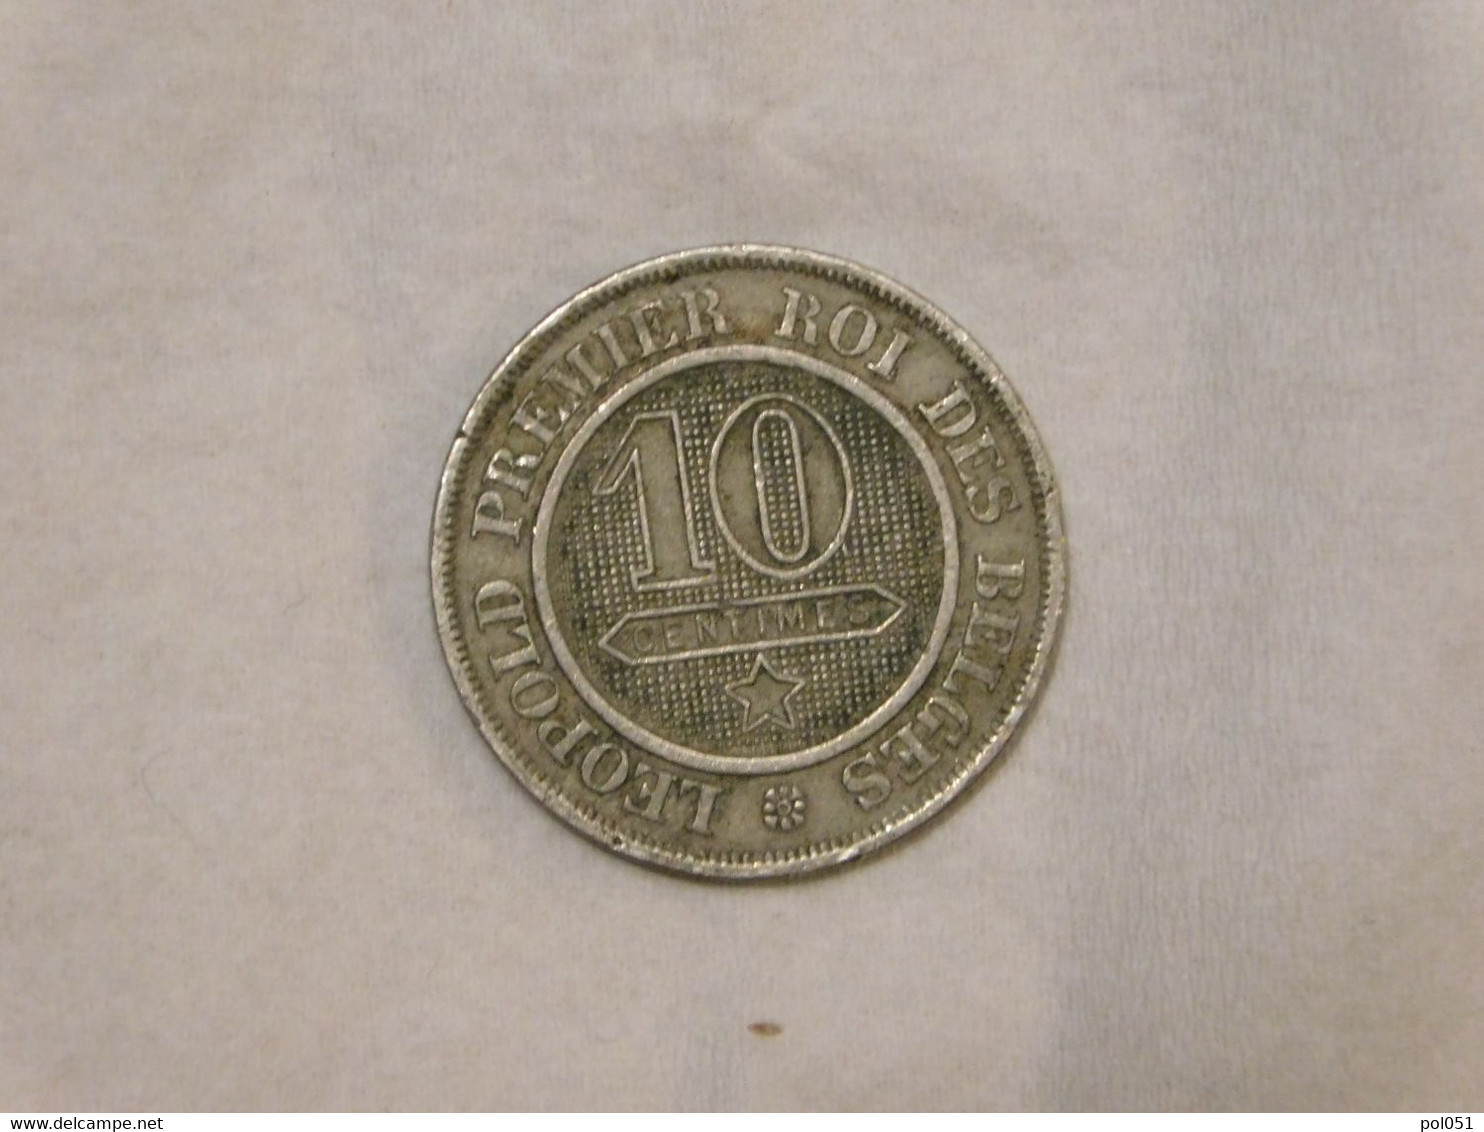 Belgique 10 Cent 1862 Centimes - 10 Cent